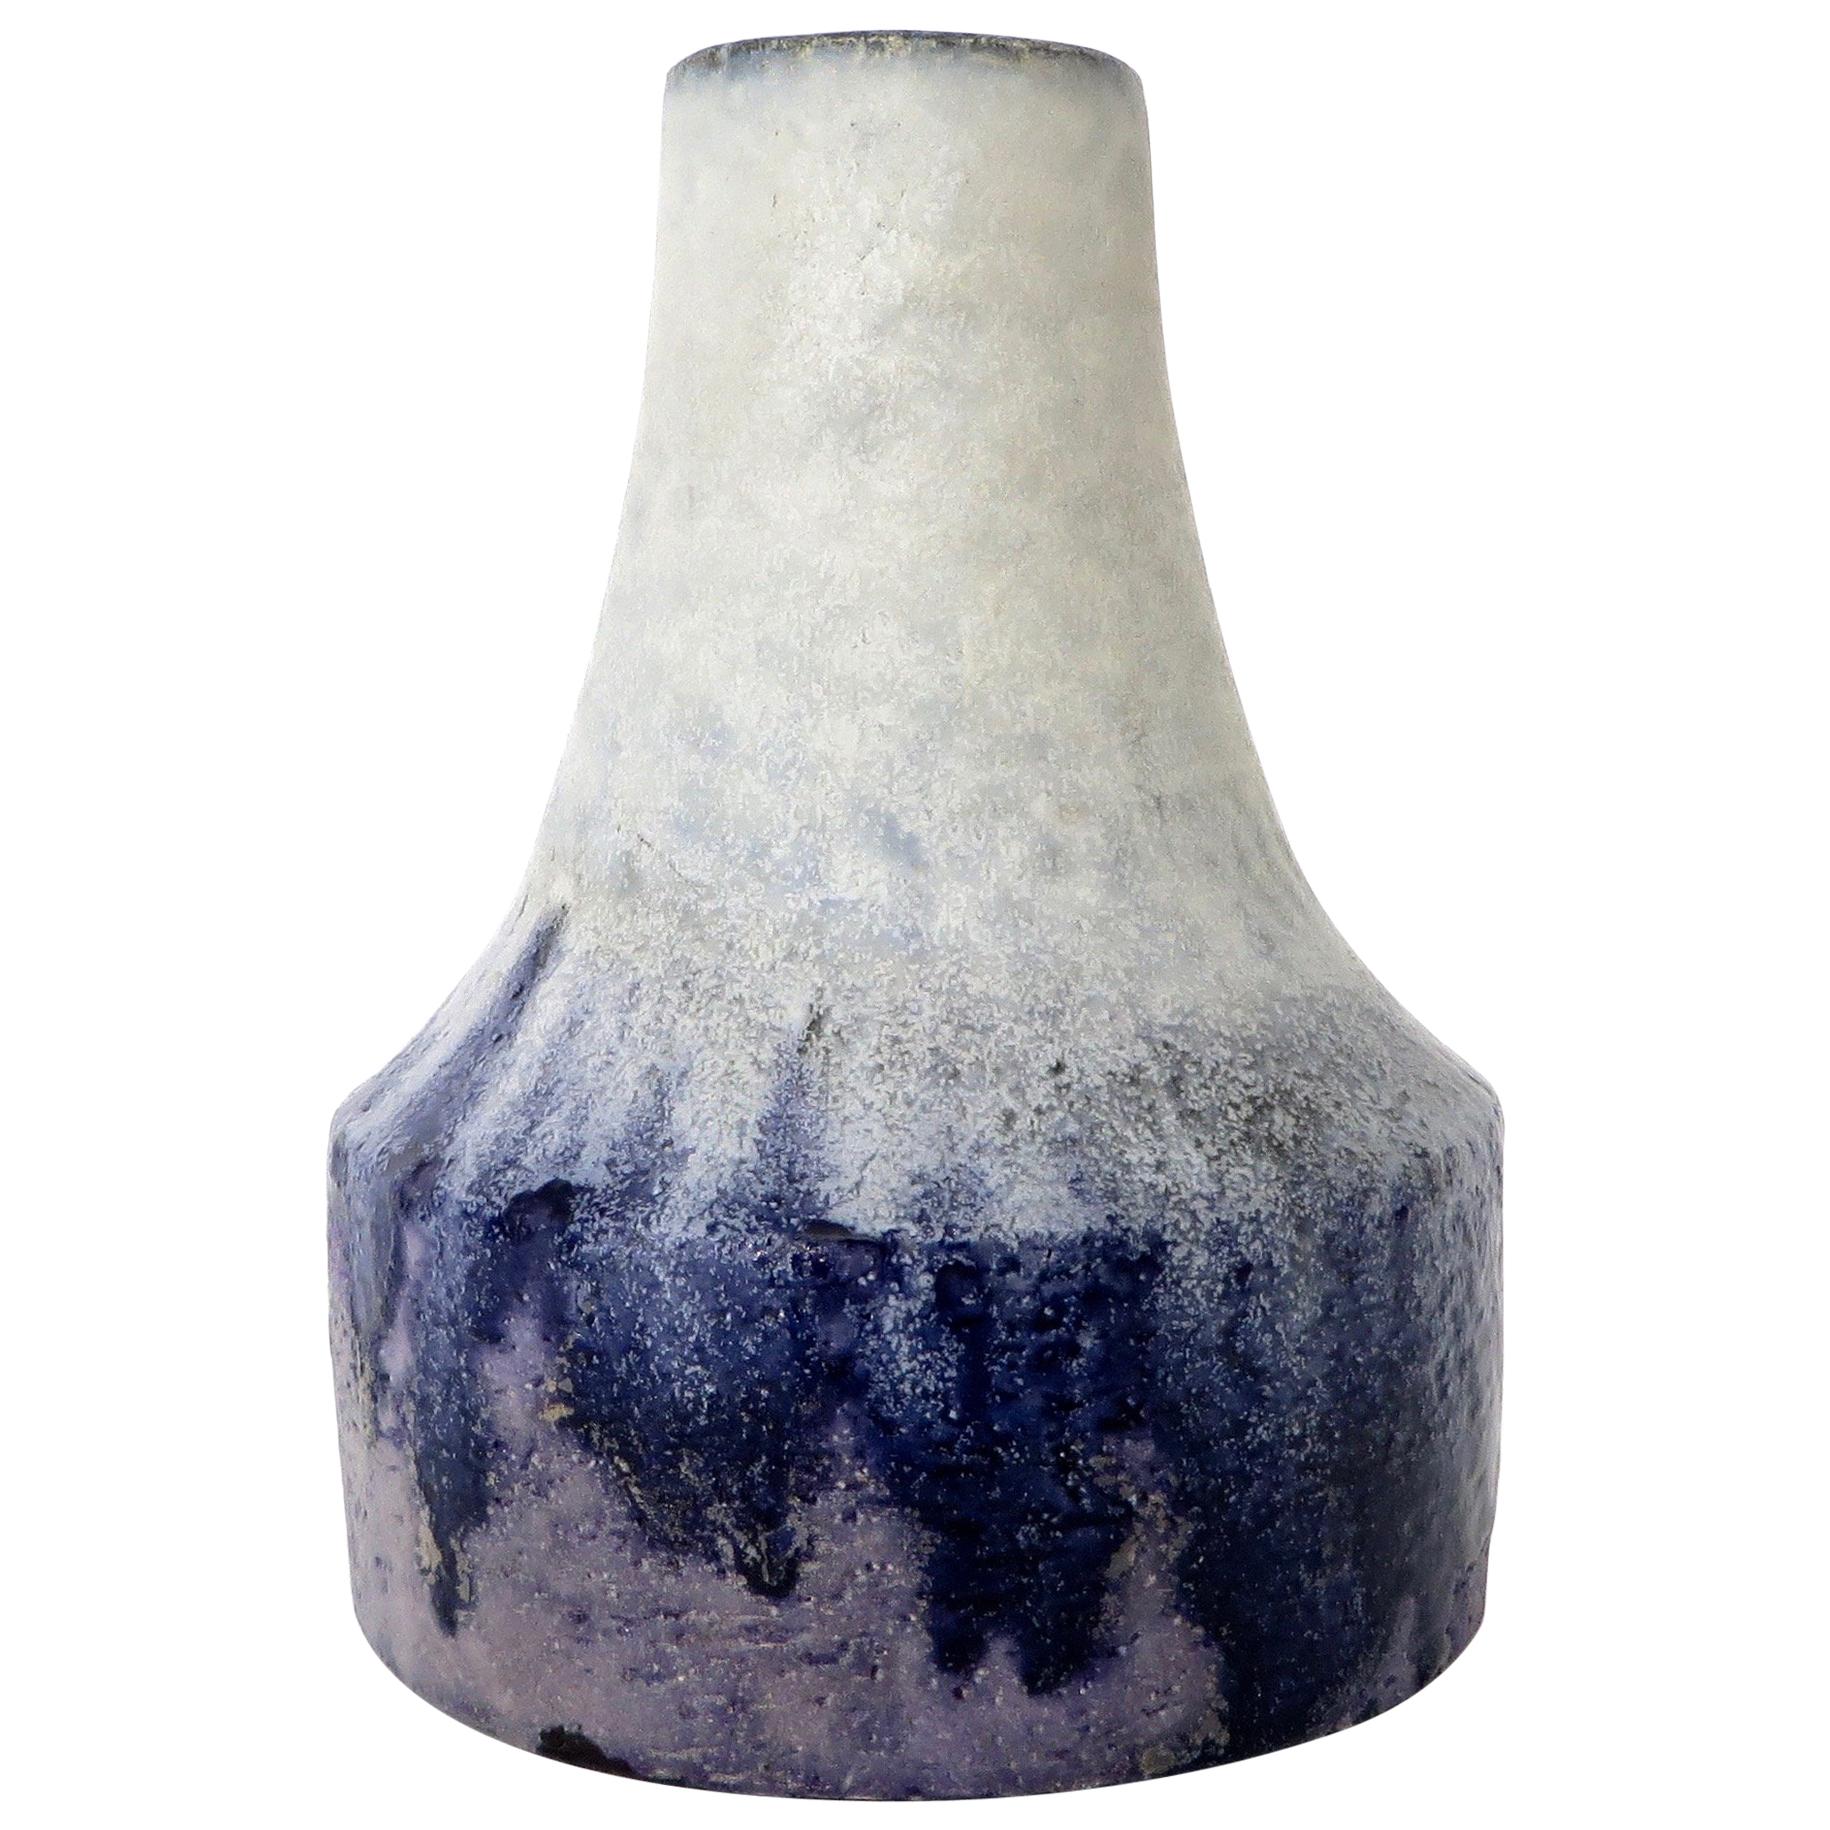 Marcello Fantoni Italian Ceramic Vase with White Blue and Purple Glaze 